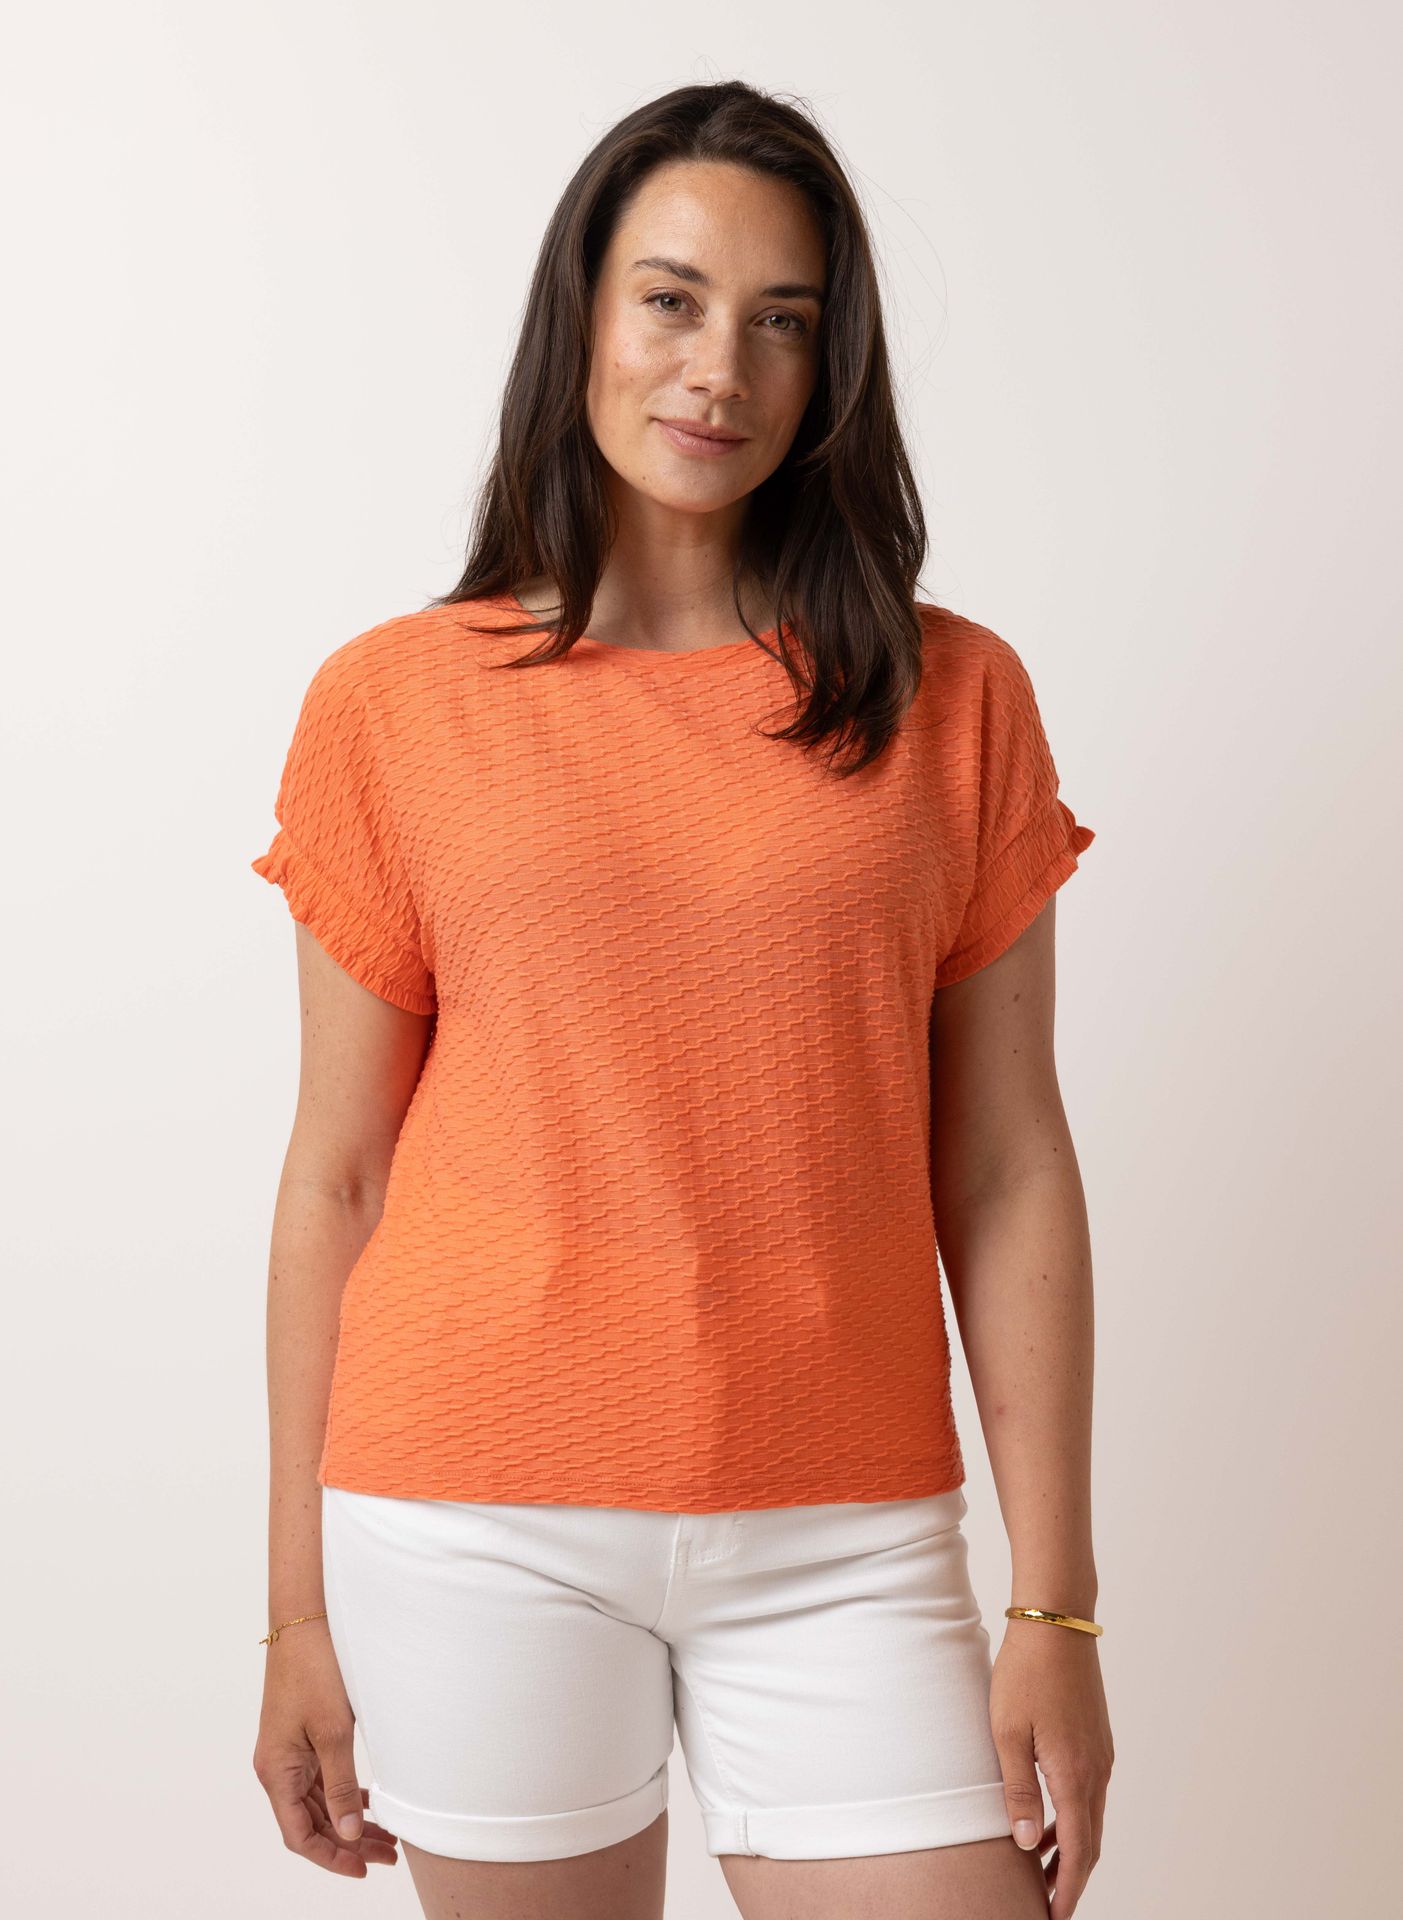 Norah Oranje shirt orange 214736-700